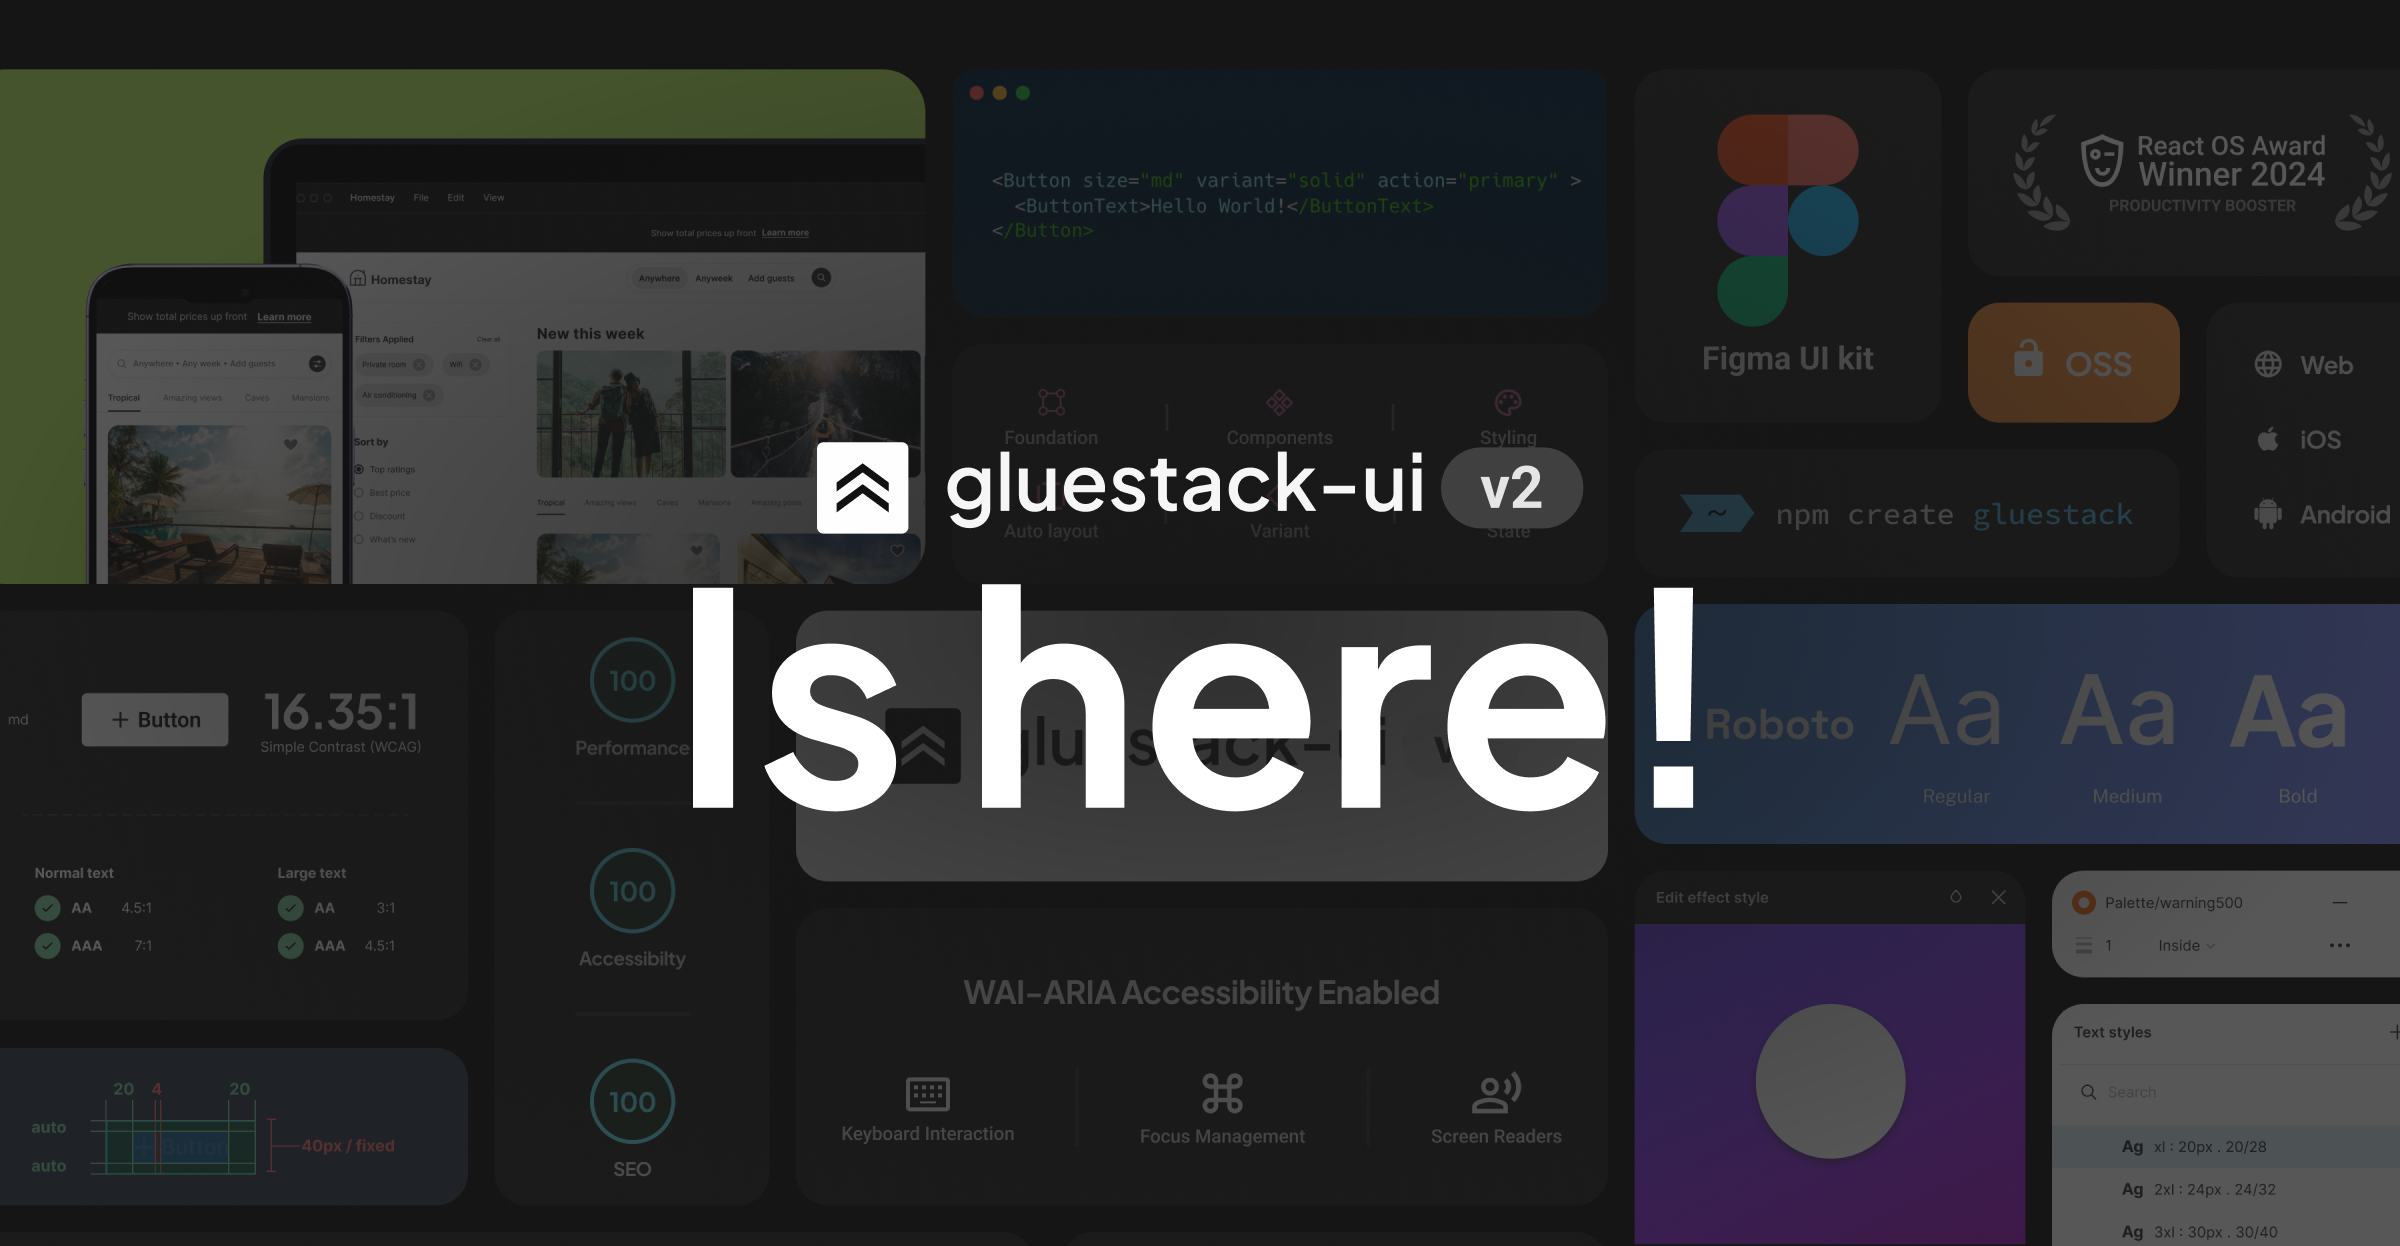 gluestack-ui v2 is here!